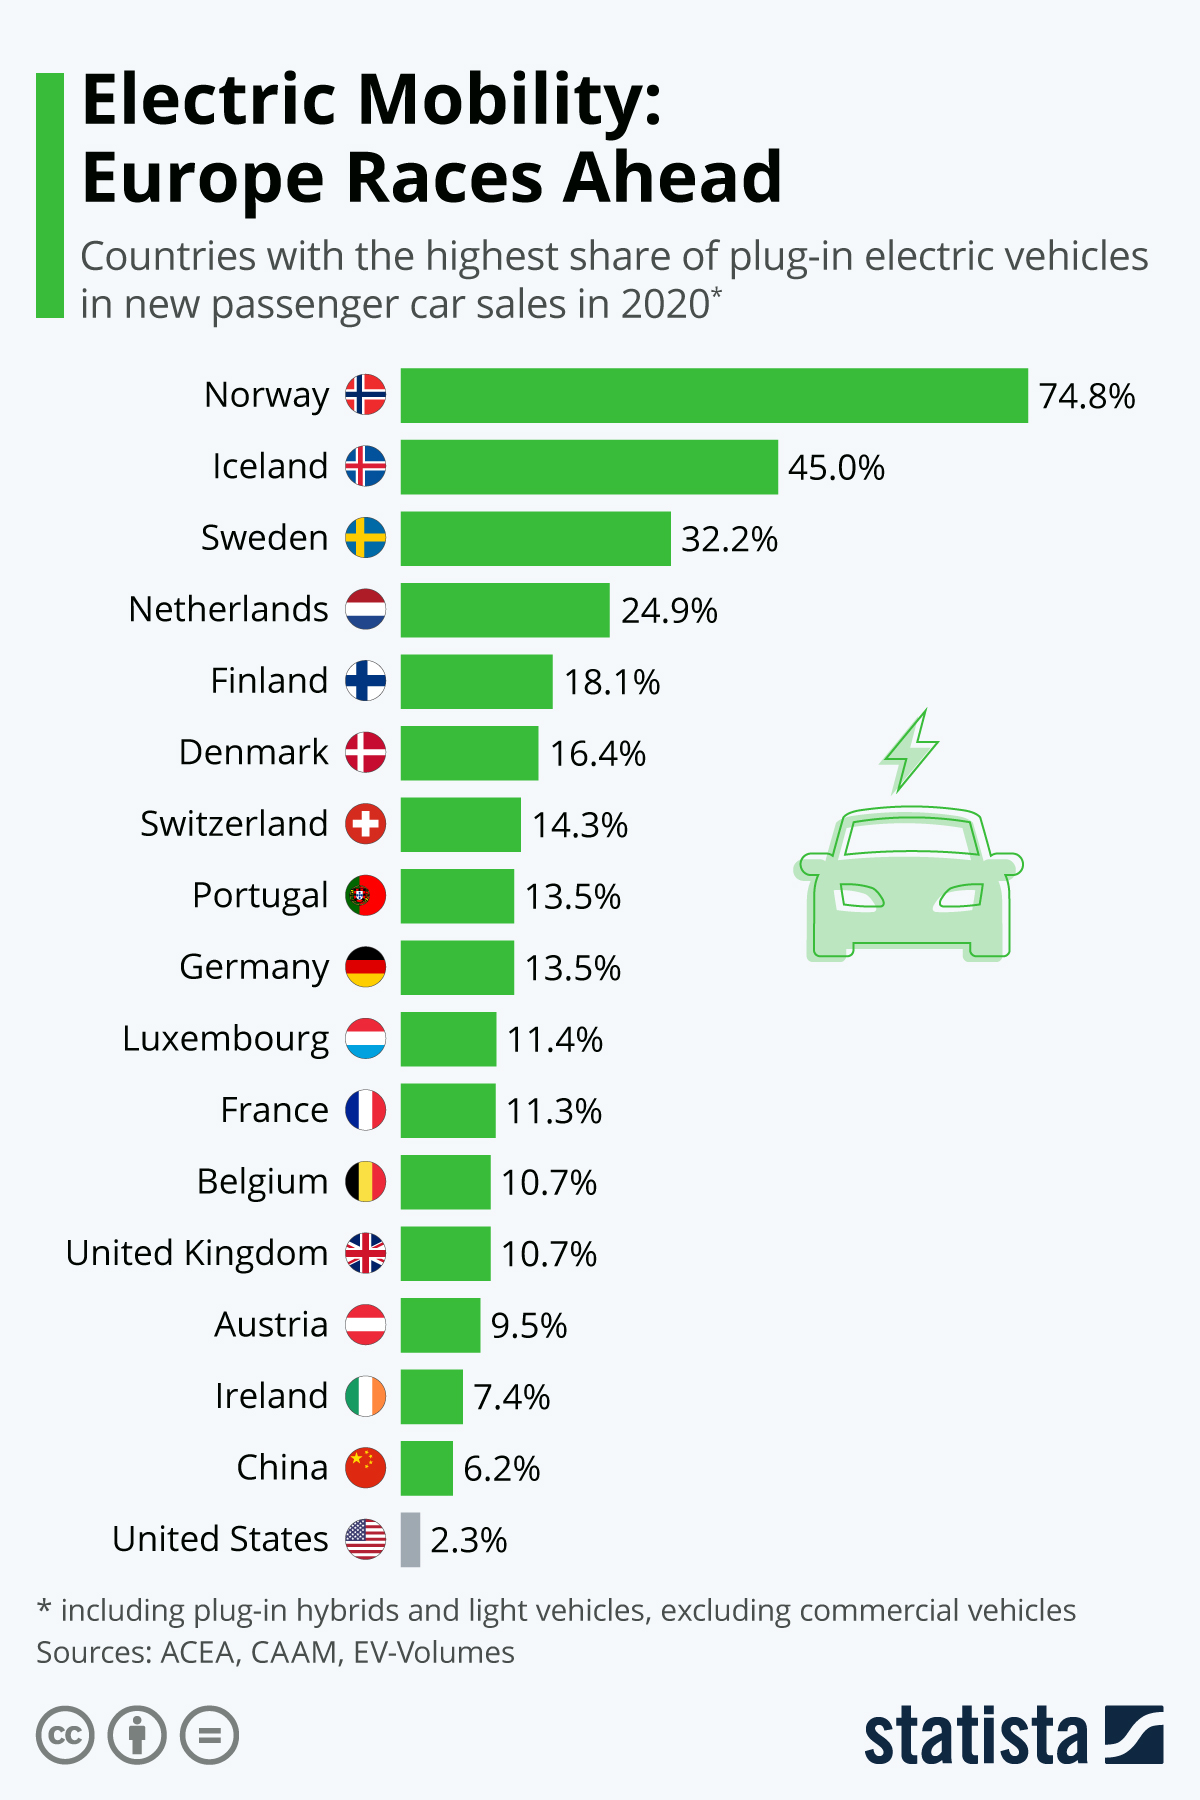 Elektromobilita je v Evropě na vzestupu